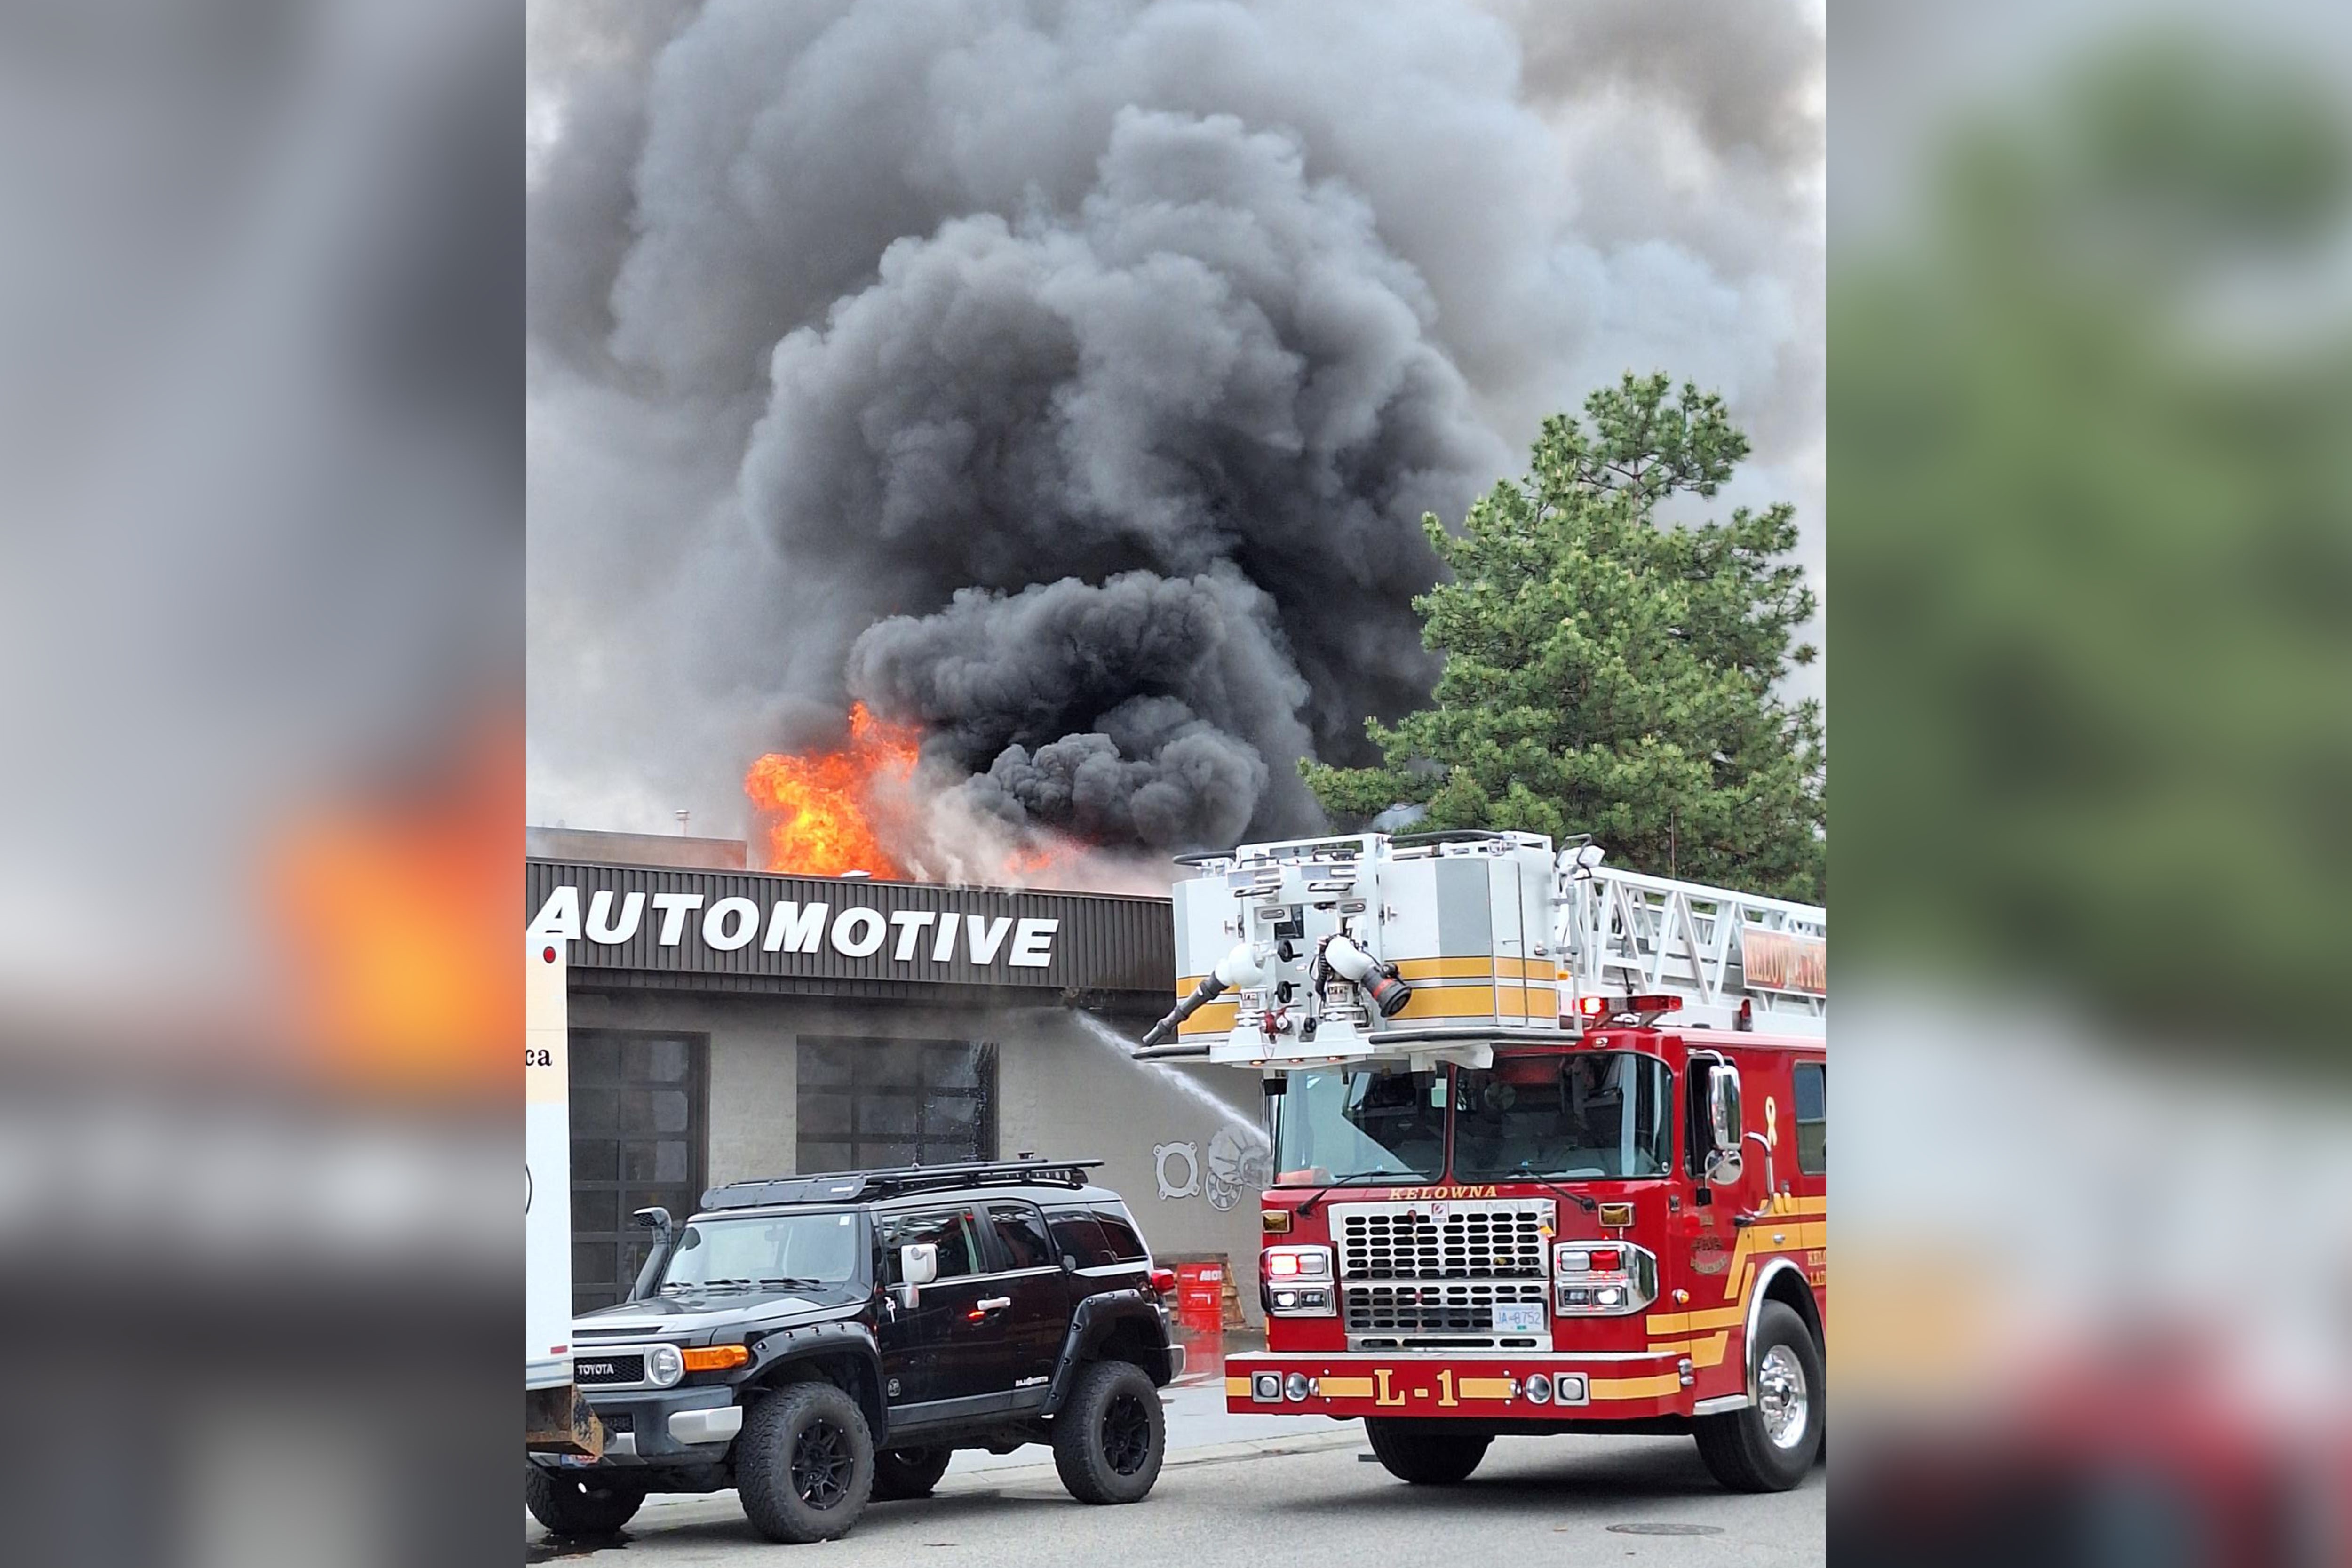 Kelowna firefighters battle blaze beside automotive shop